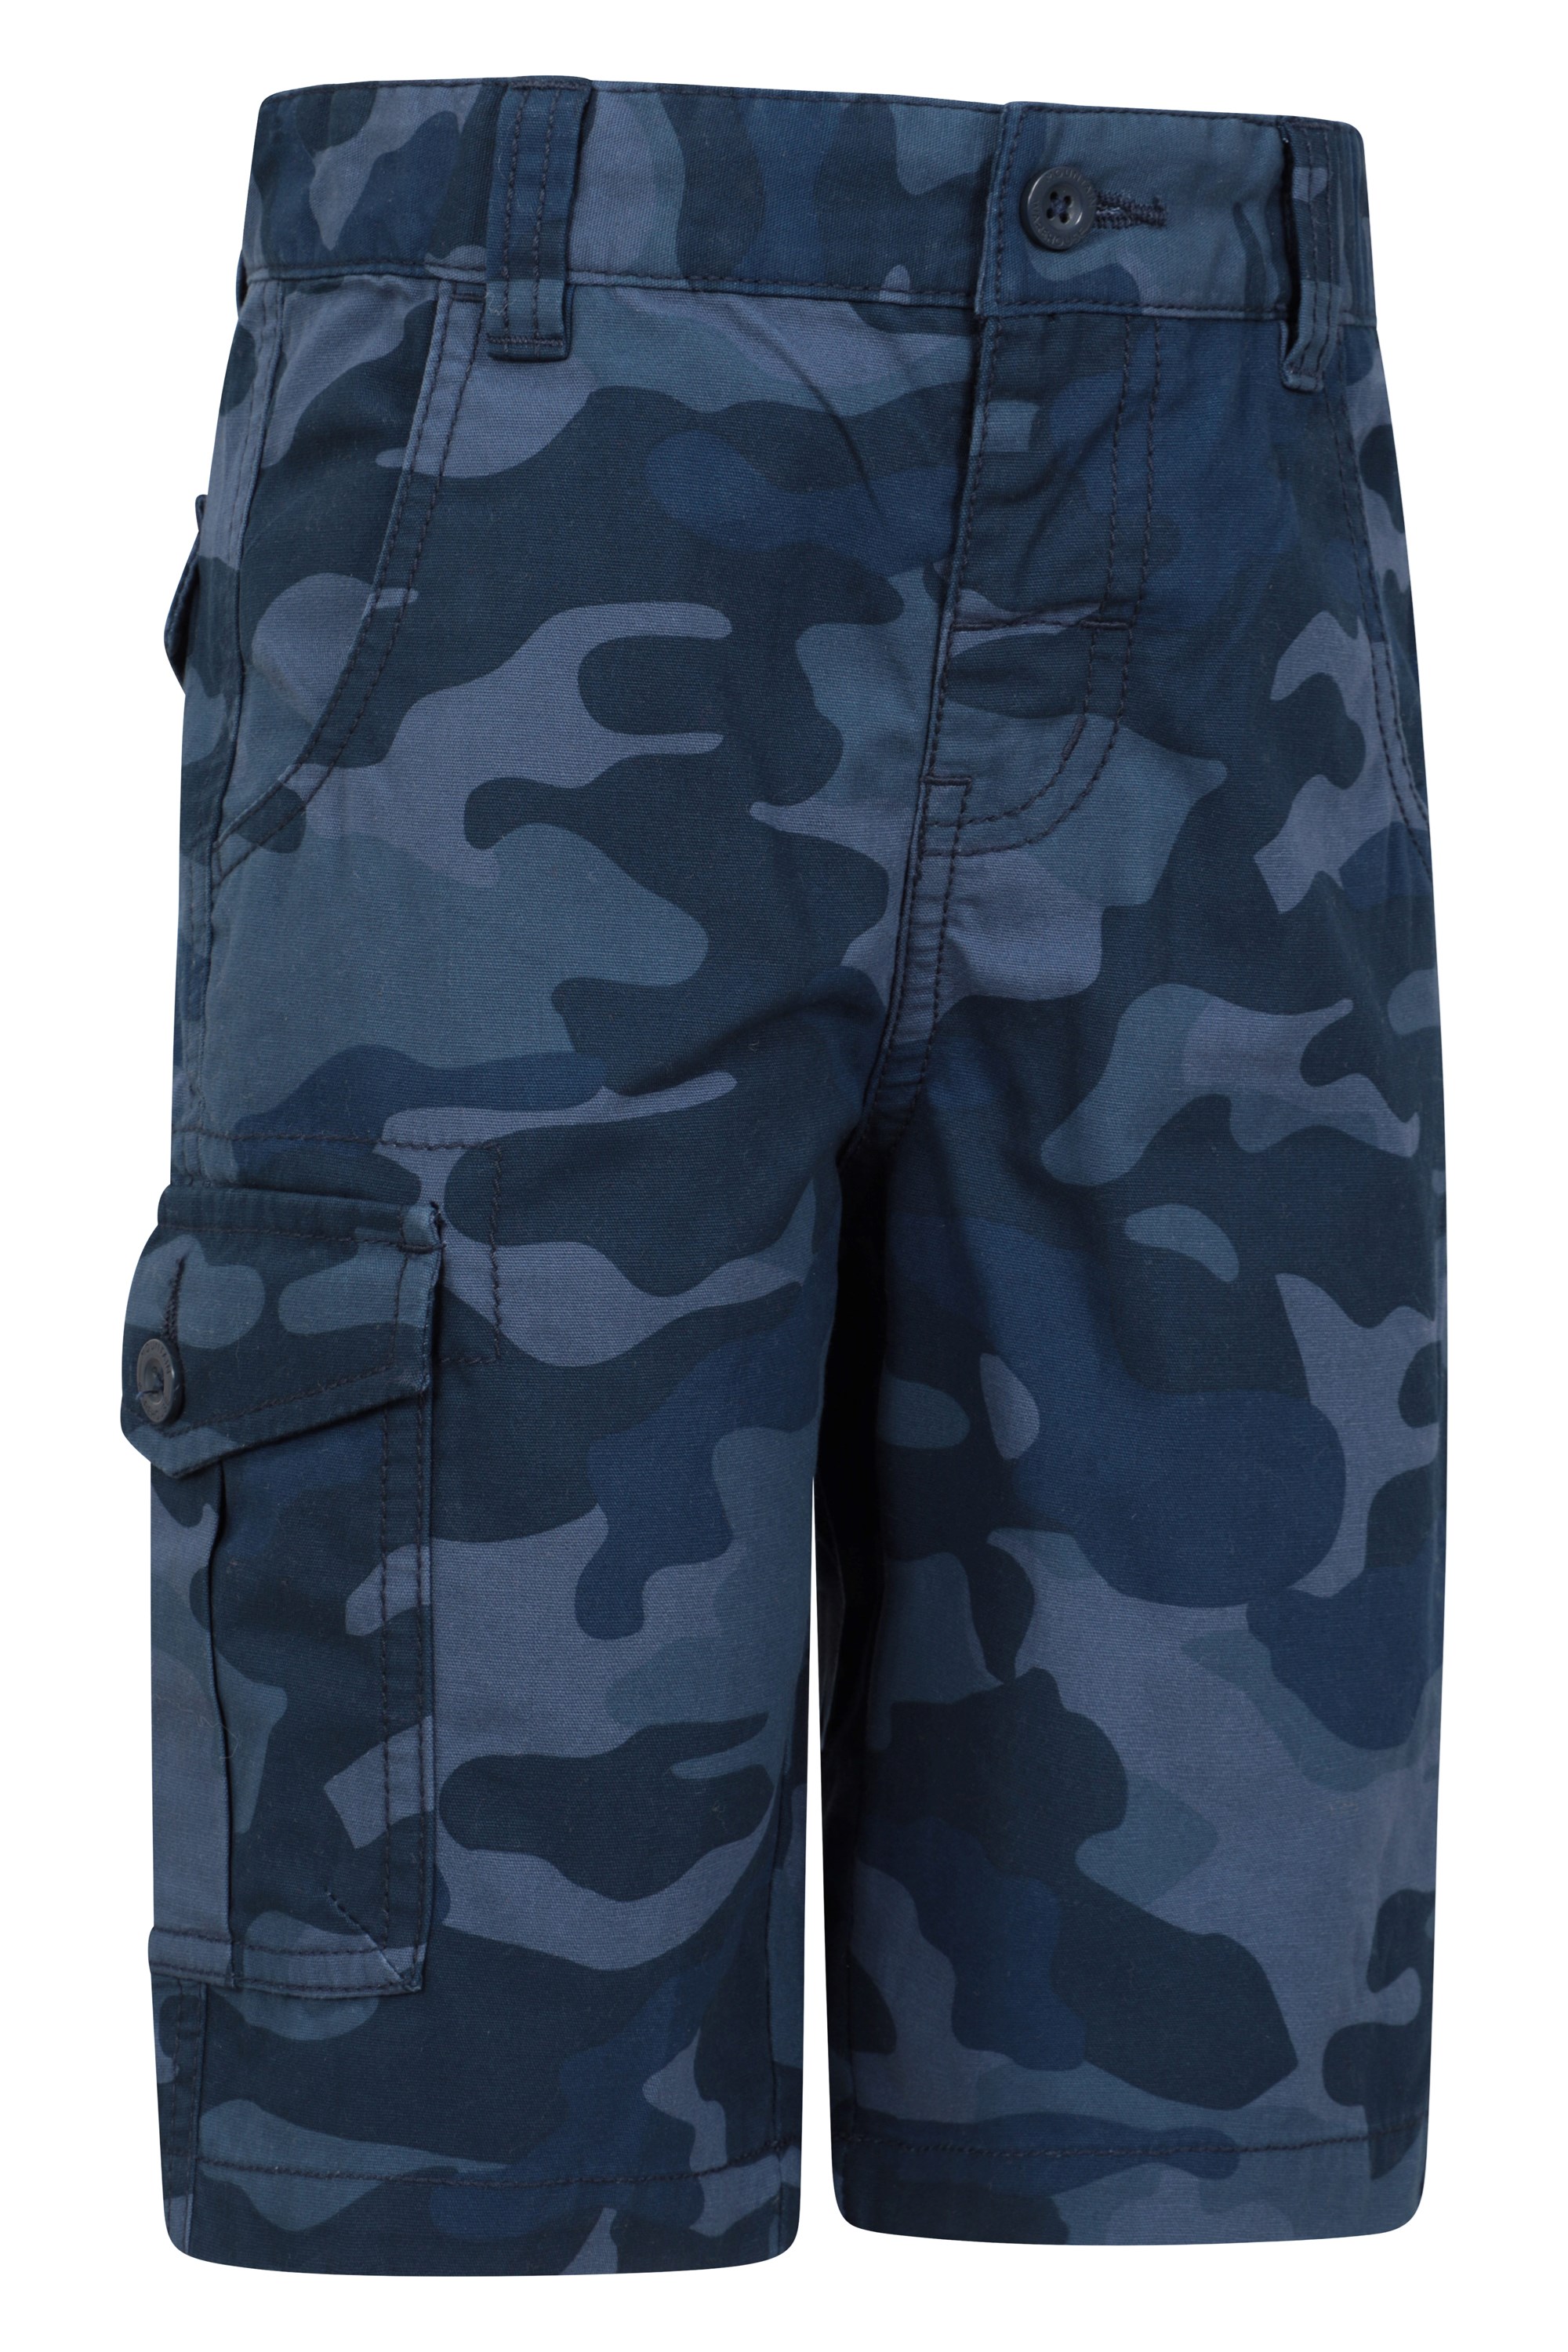 MEILONGER Boys Camo Shorts School Uniform Pants Size 8,10-12,14-16 :  : Clothing, Shoes & Accessories